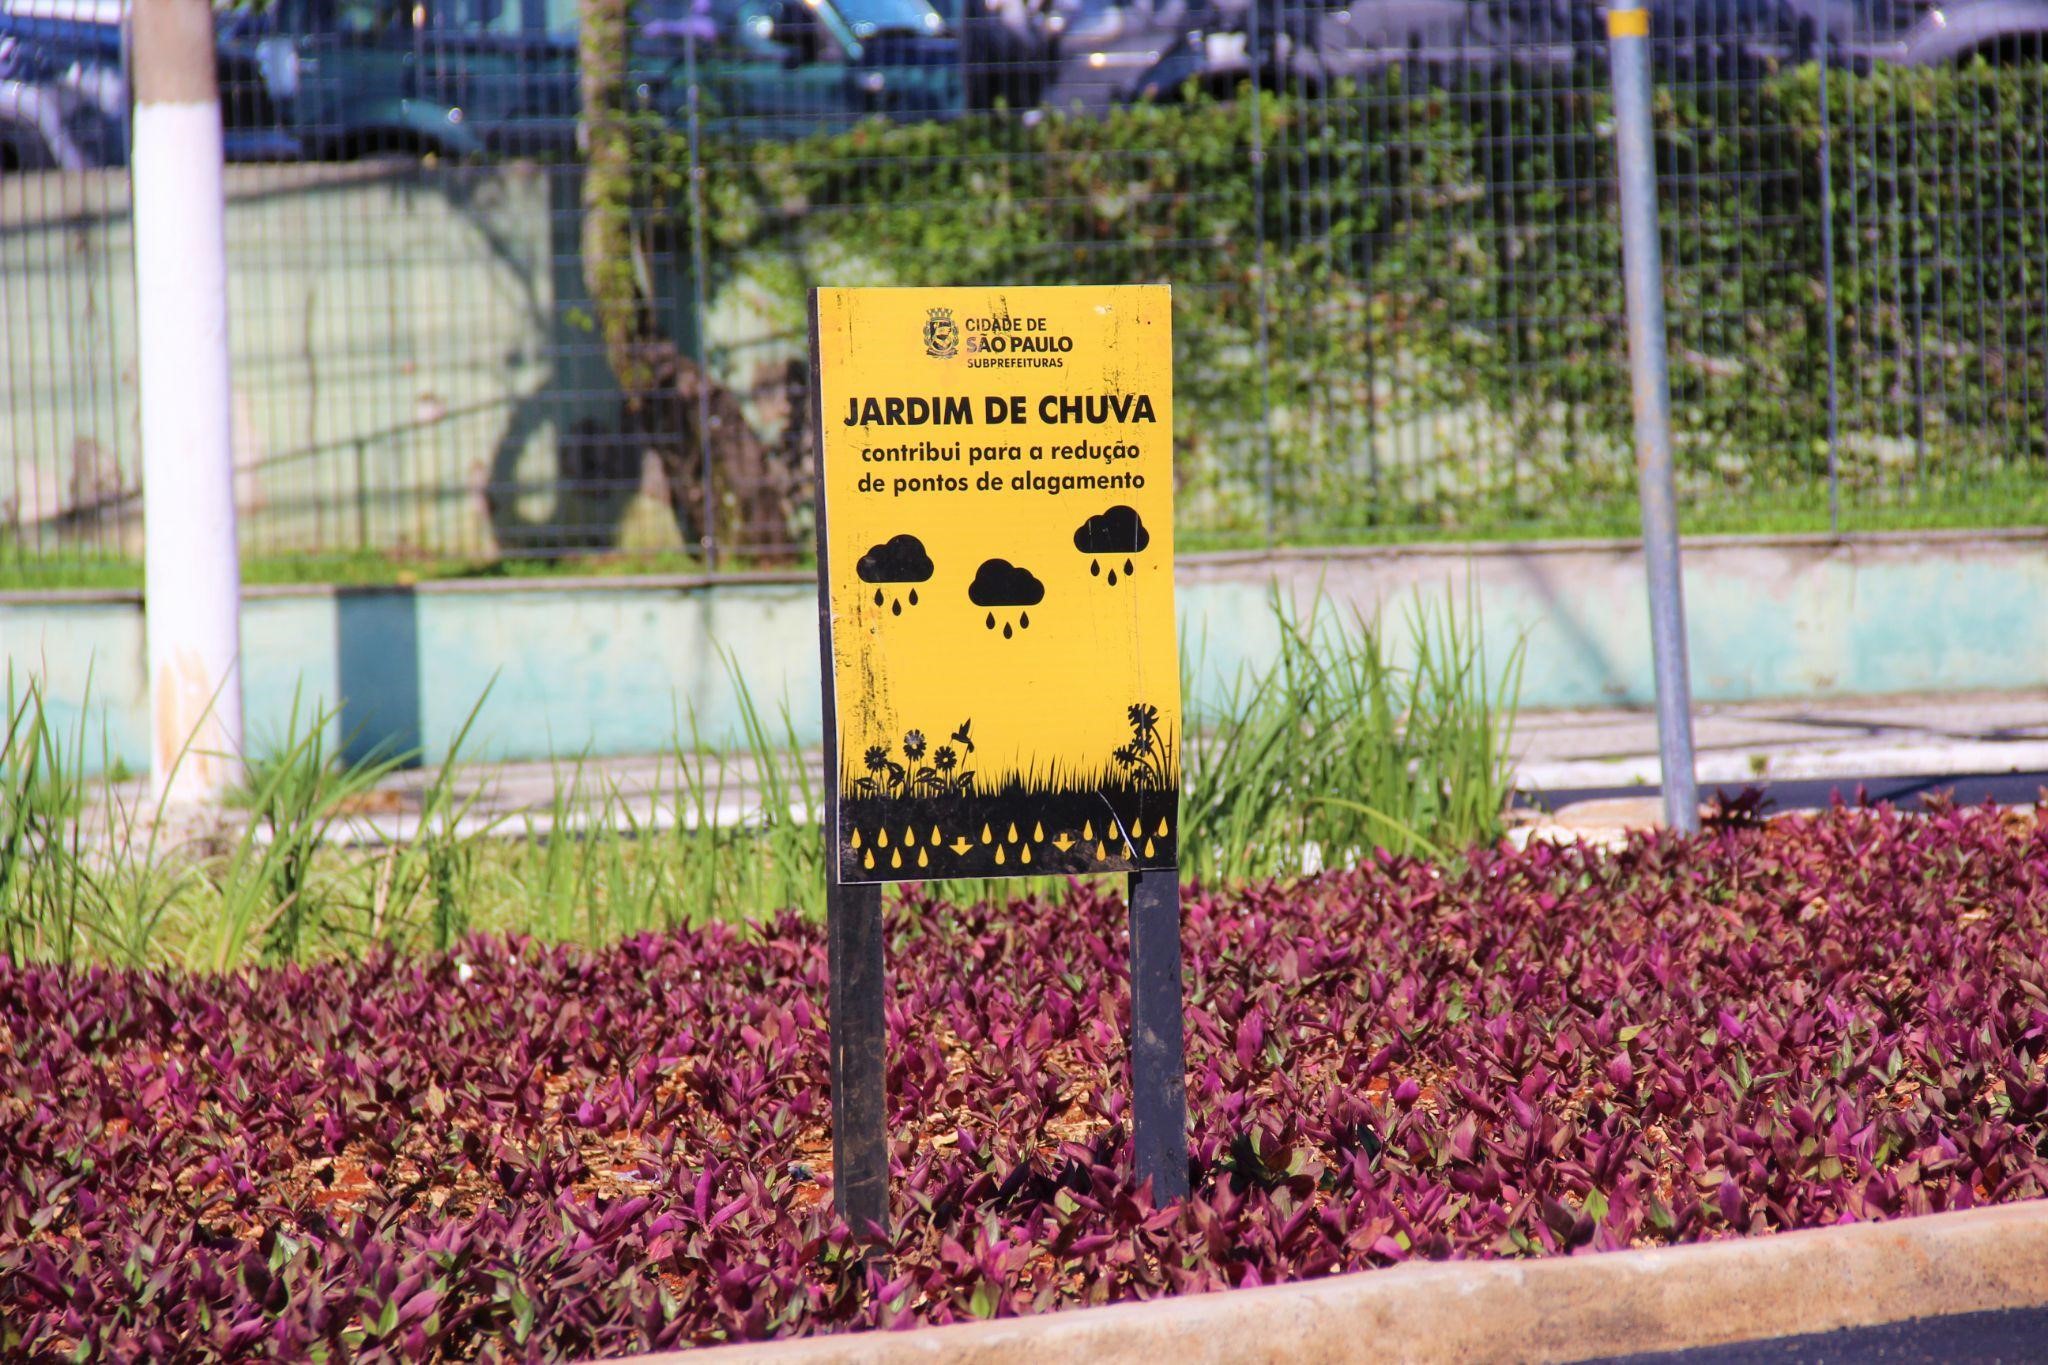 A imagem mostra um jardim de chuva com uma placa amarela escrito "jardim de chuva" em preto, com pequenos detalhes que representam o jardim.